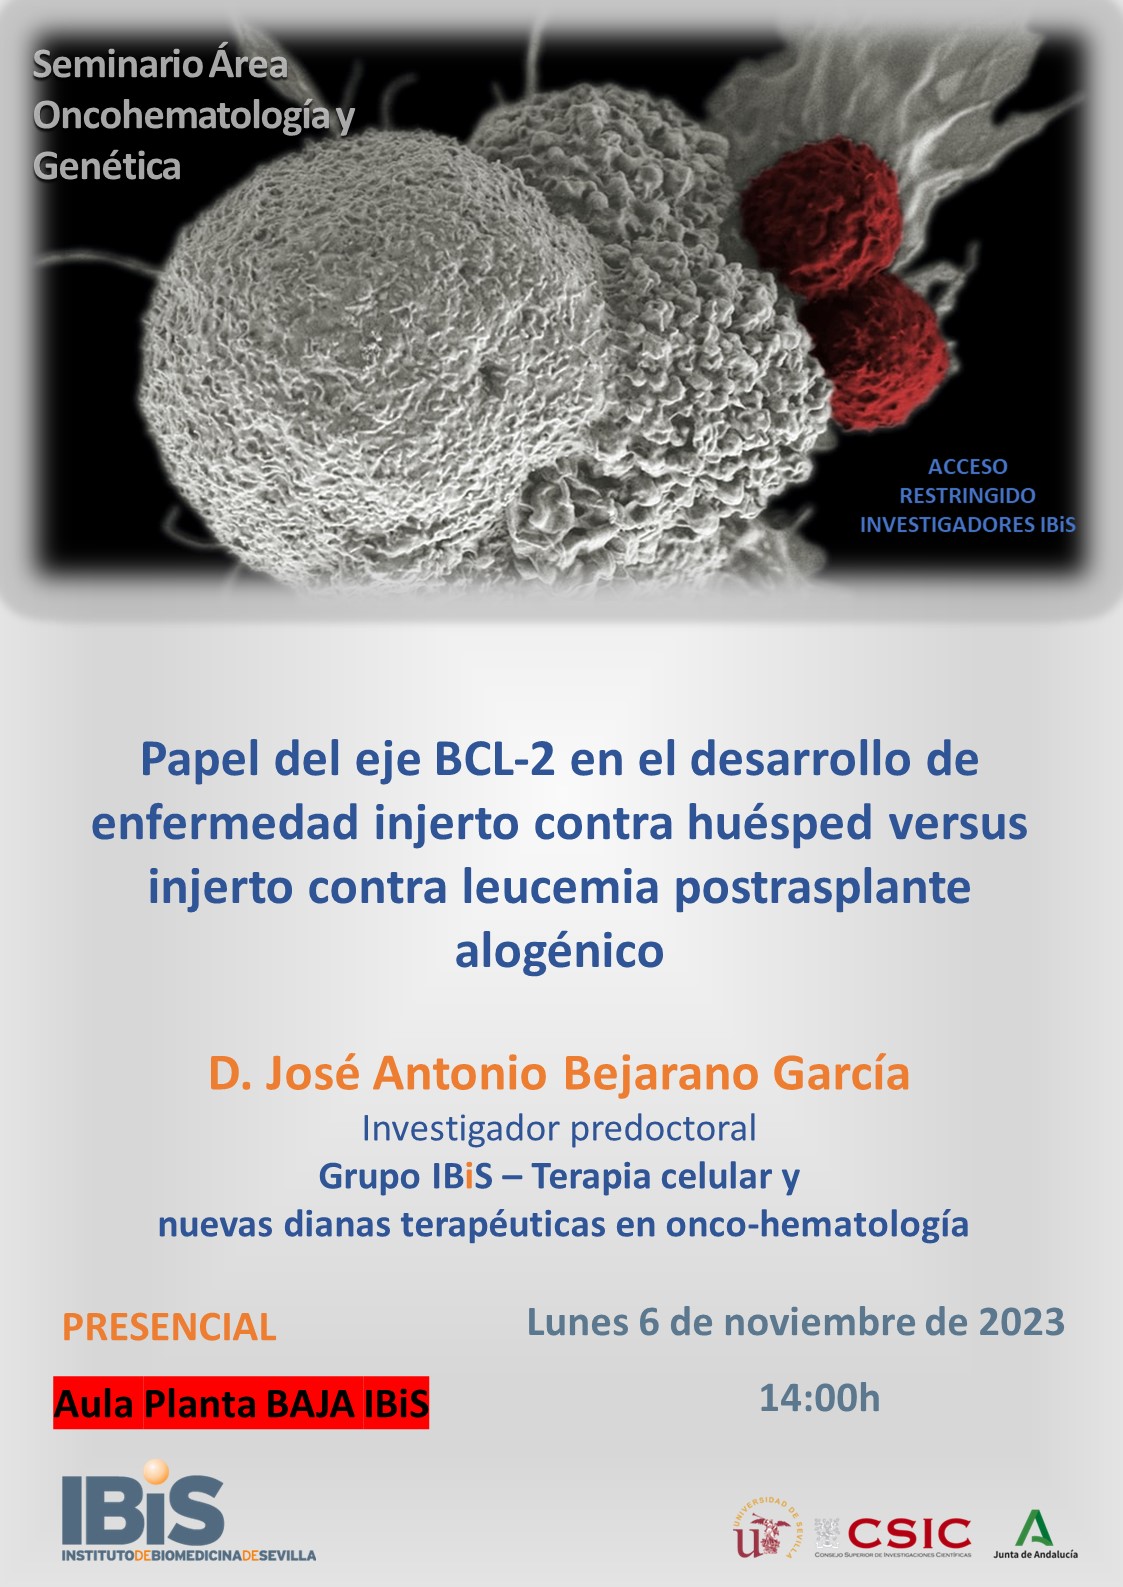 Poster: Papel del eje BCL-2 en el desarrollo de enfermedad injerto contra huésped versus injerto contra leucemia postrasplante alogénico